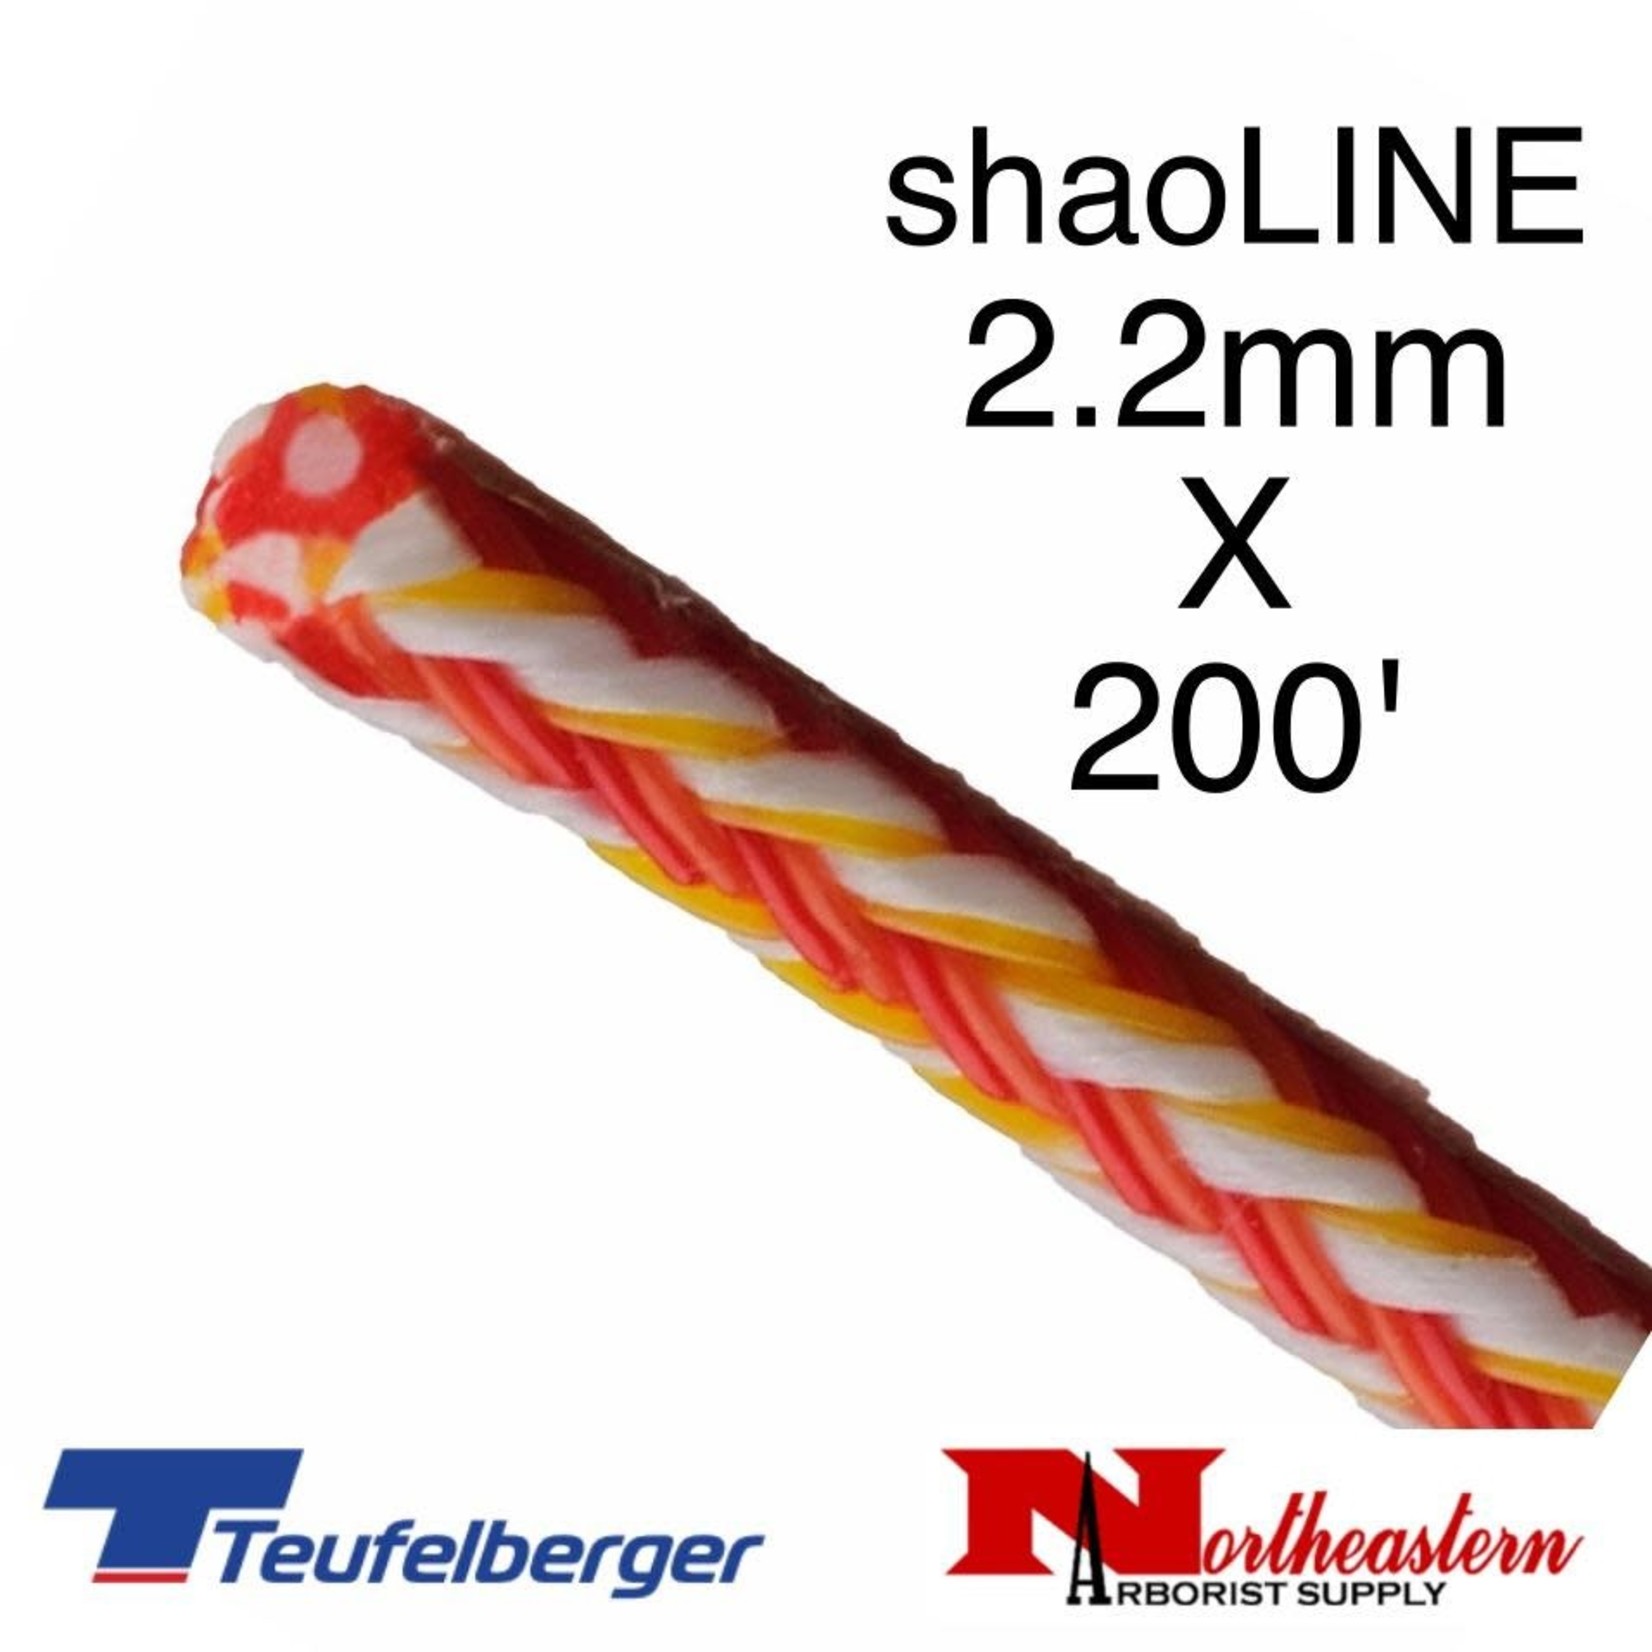 Teufelberger Shaoline Throwline 2.2mm x 200'